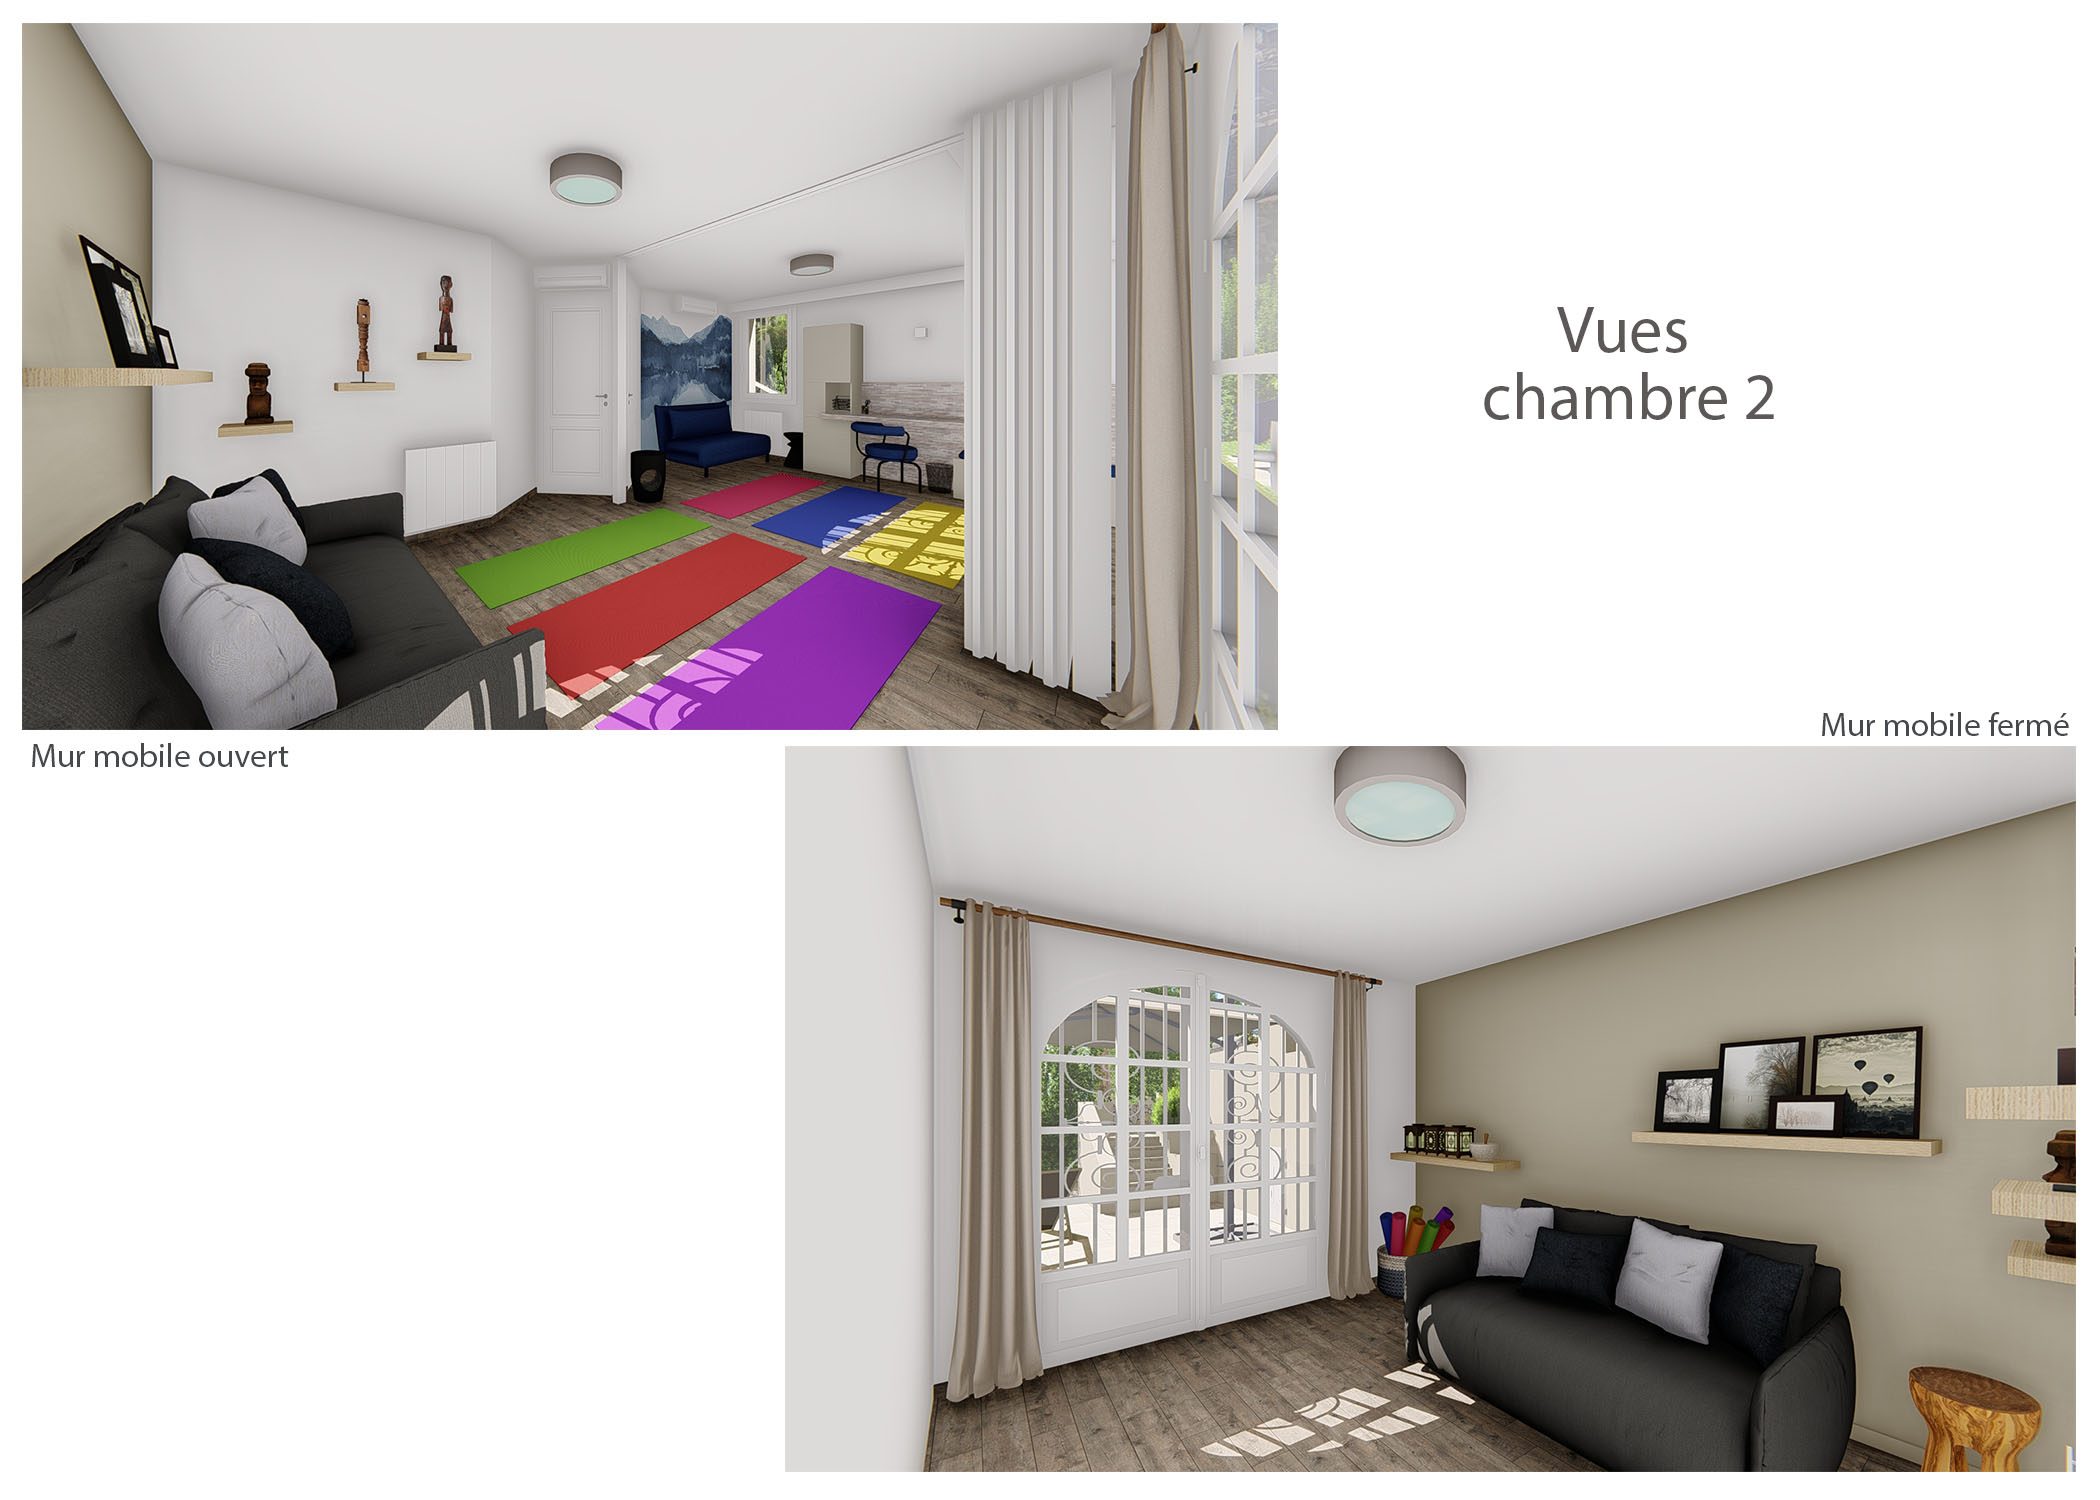 agencement-decoration-maison chateauneuf-le-rouge-vues chambre 2-dekho design